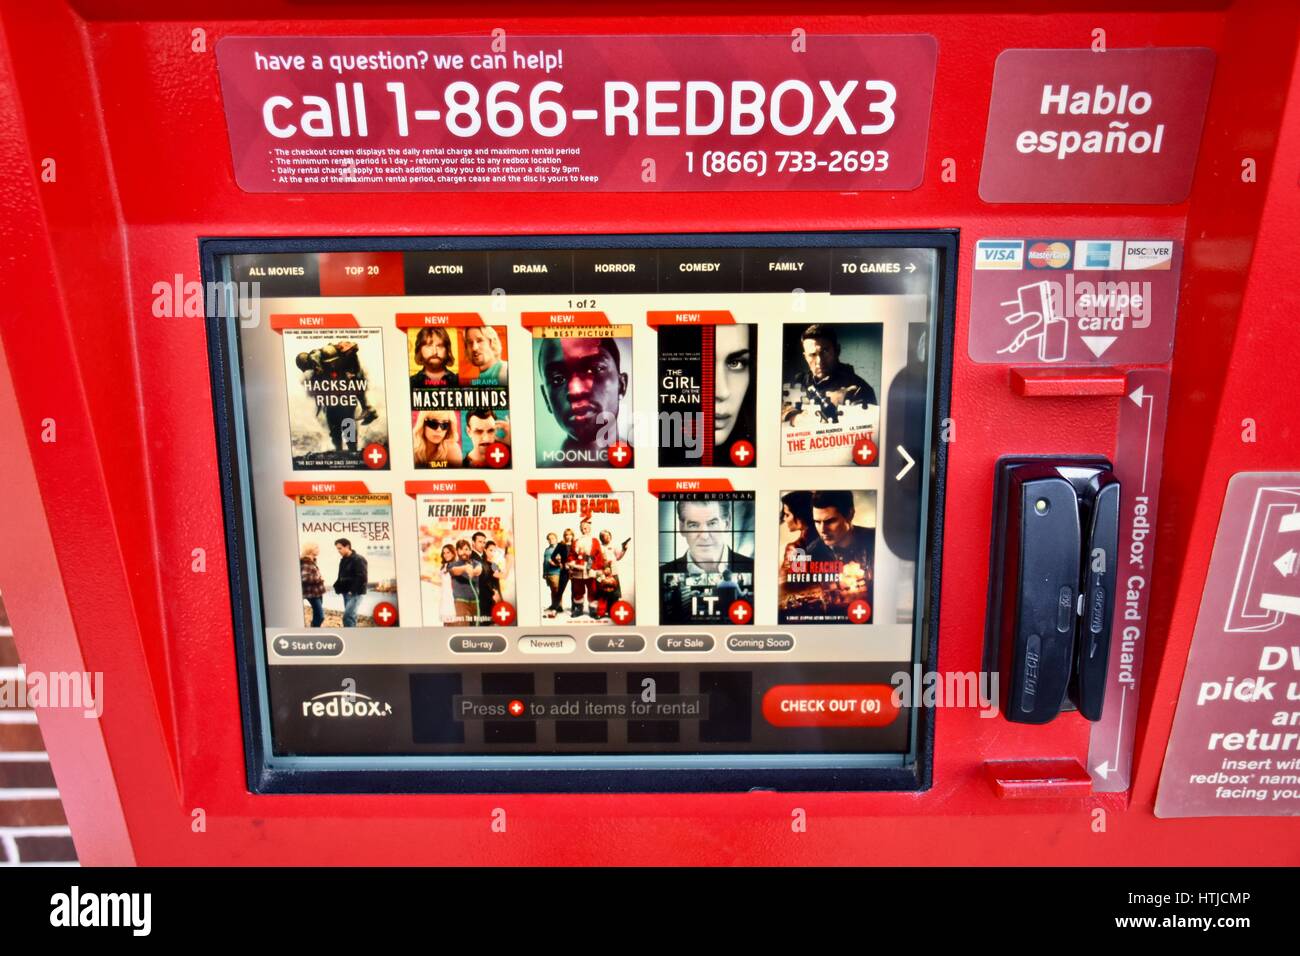 Redbox dvd rental immagini e fotografie stock ad alta risoluzione - Alamy